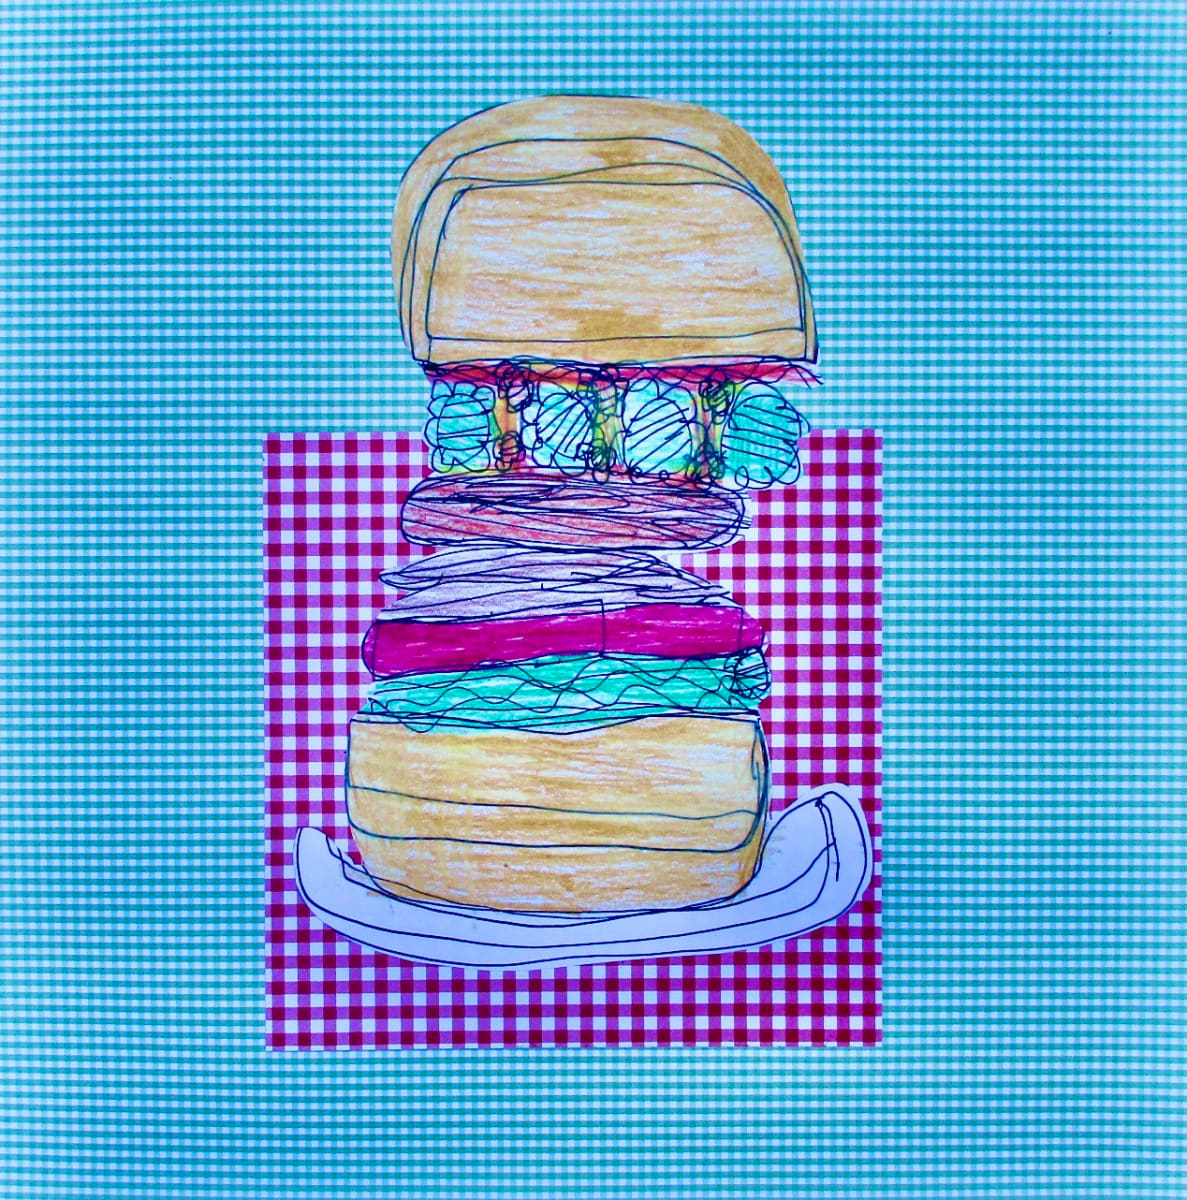 Burger by Elias Herdocia 